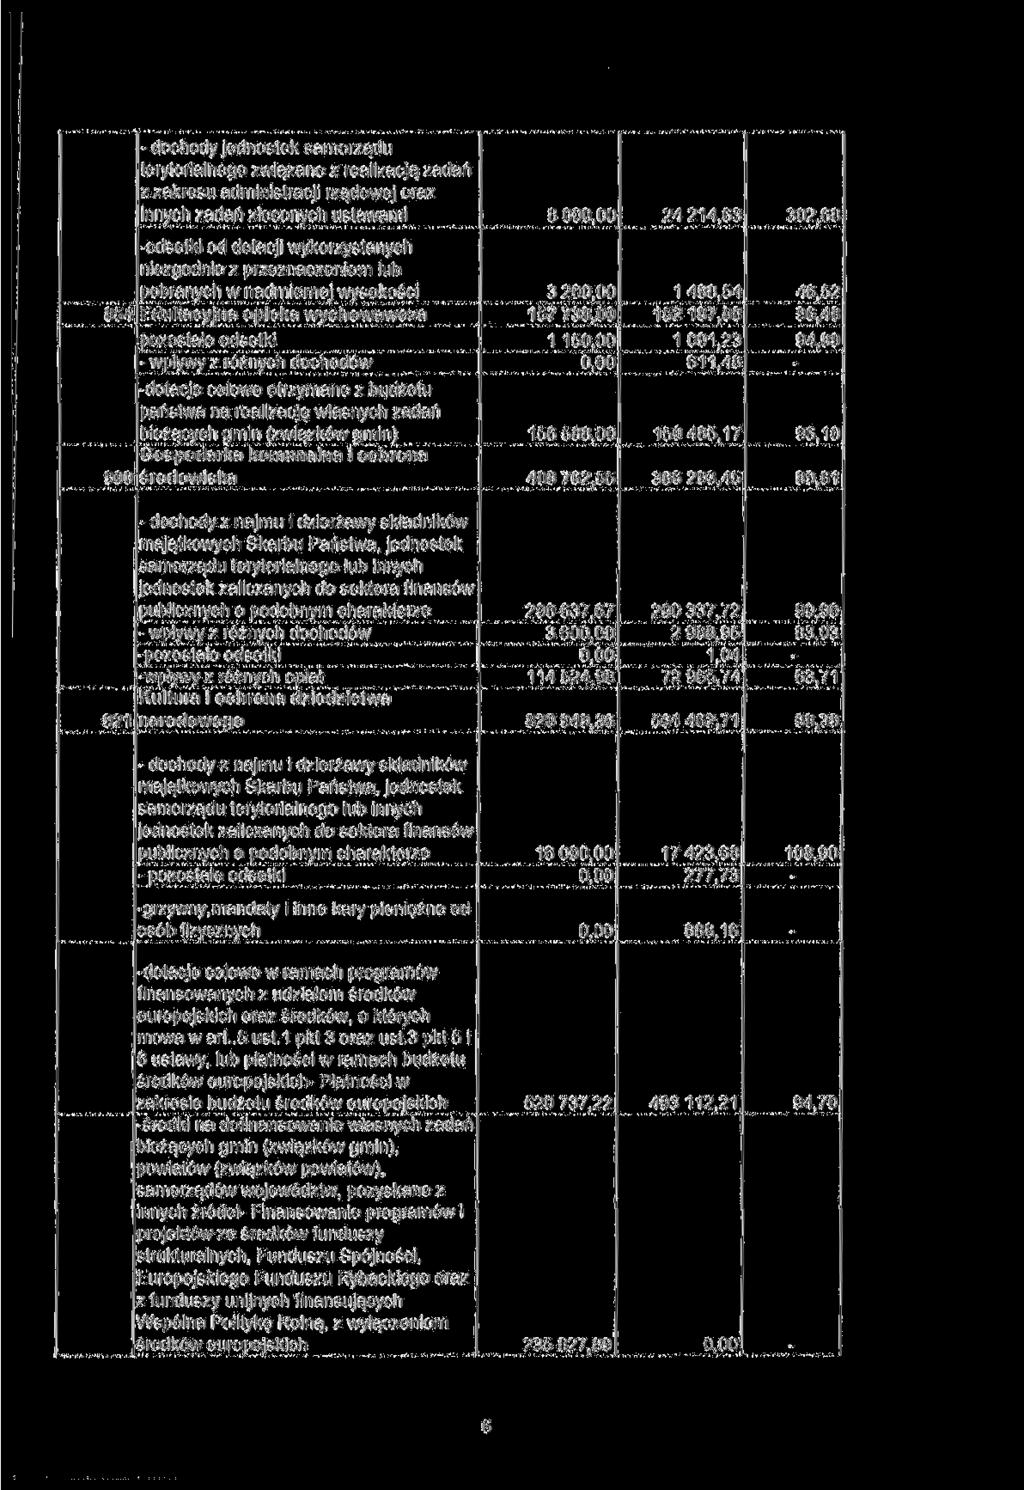 dochody jednostek samorządu terytorialnego związane z realizacją zadań z zakresu administracji rządowej oraz innych zadań zleconych 800 24214,63 302,68 854 odsetki od dotacji wykorzystanych